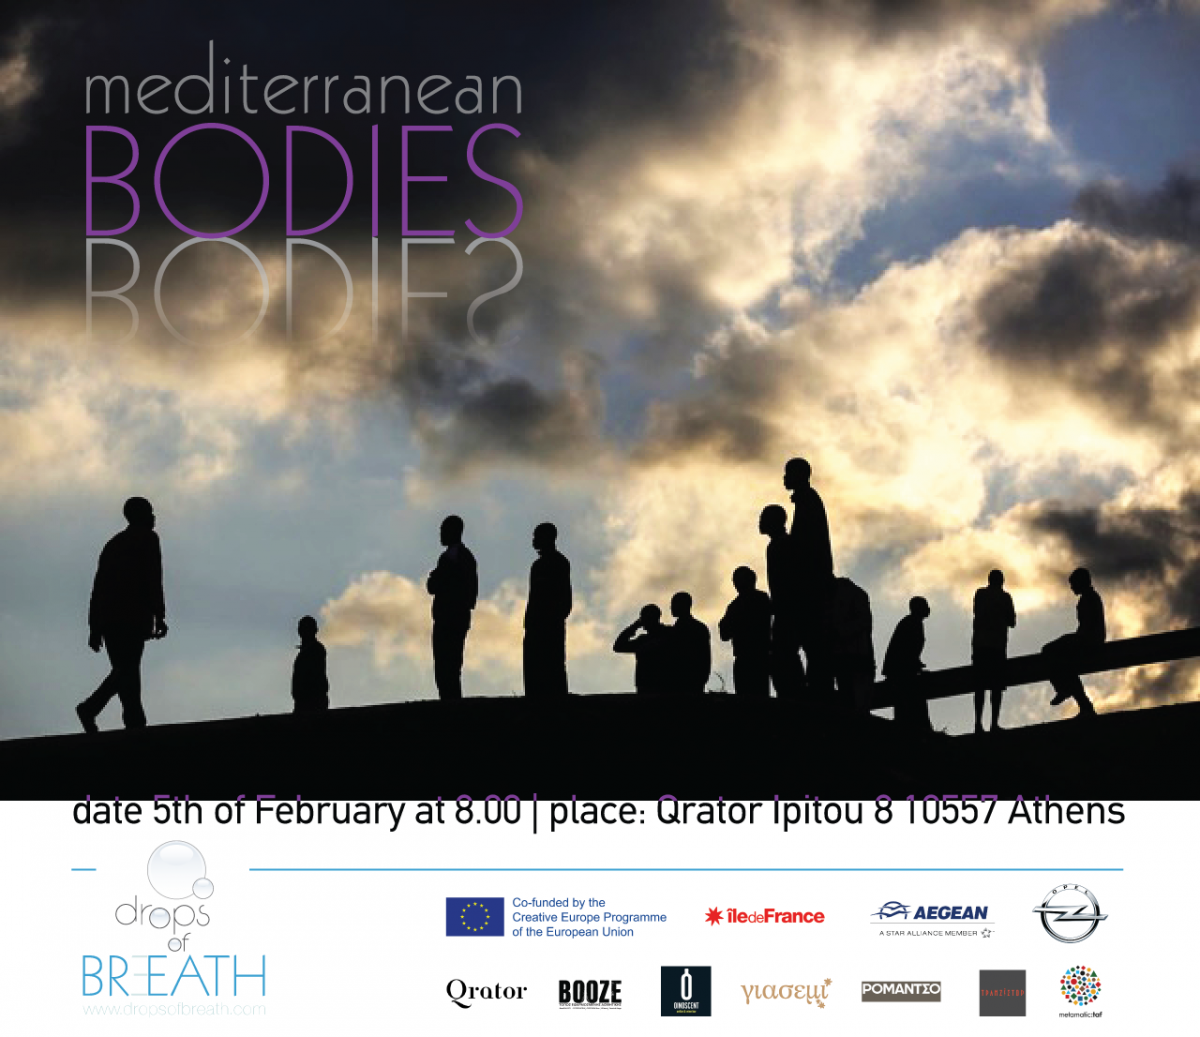 Mediterranean Bodies invitation